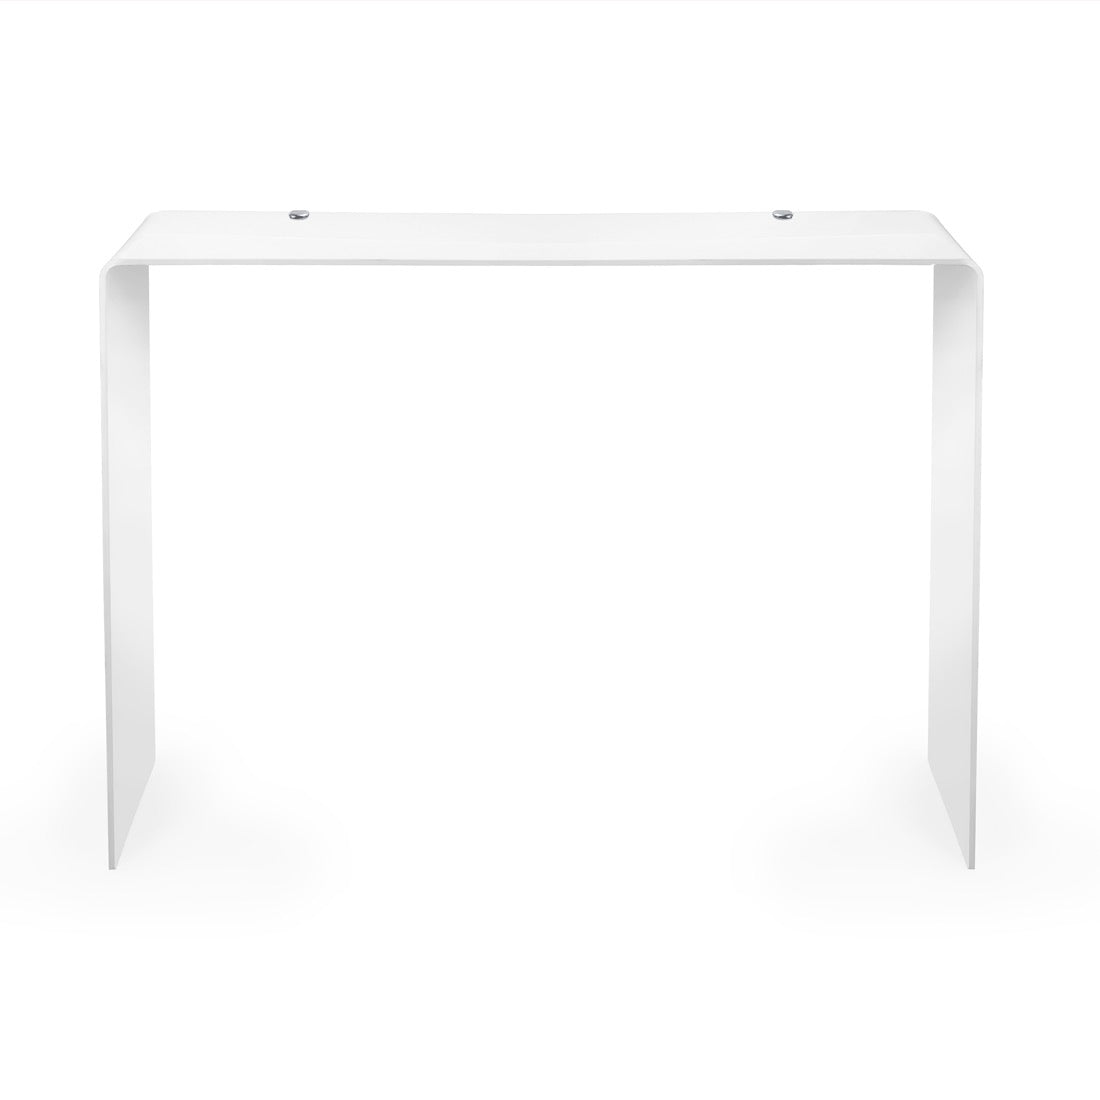 iPLEX Milvio Consolle in Plexiglas 75x100cm Bianco Made in Italy